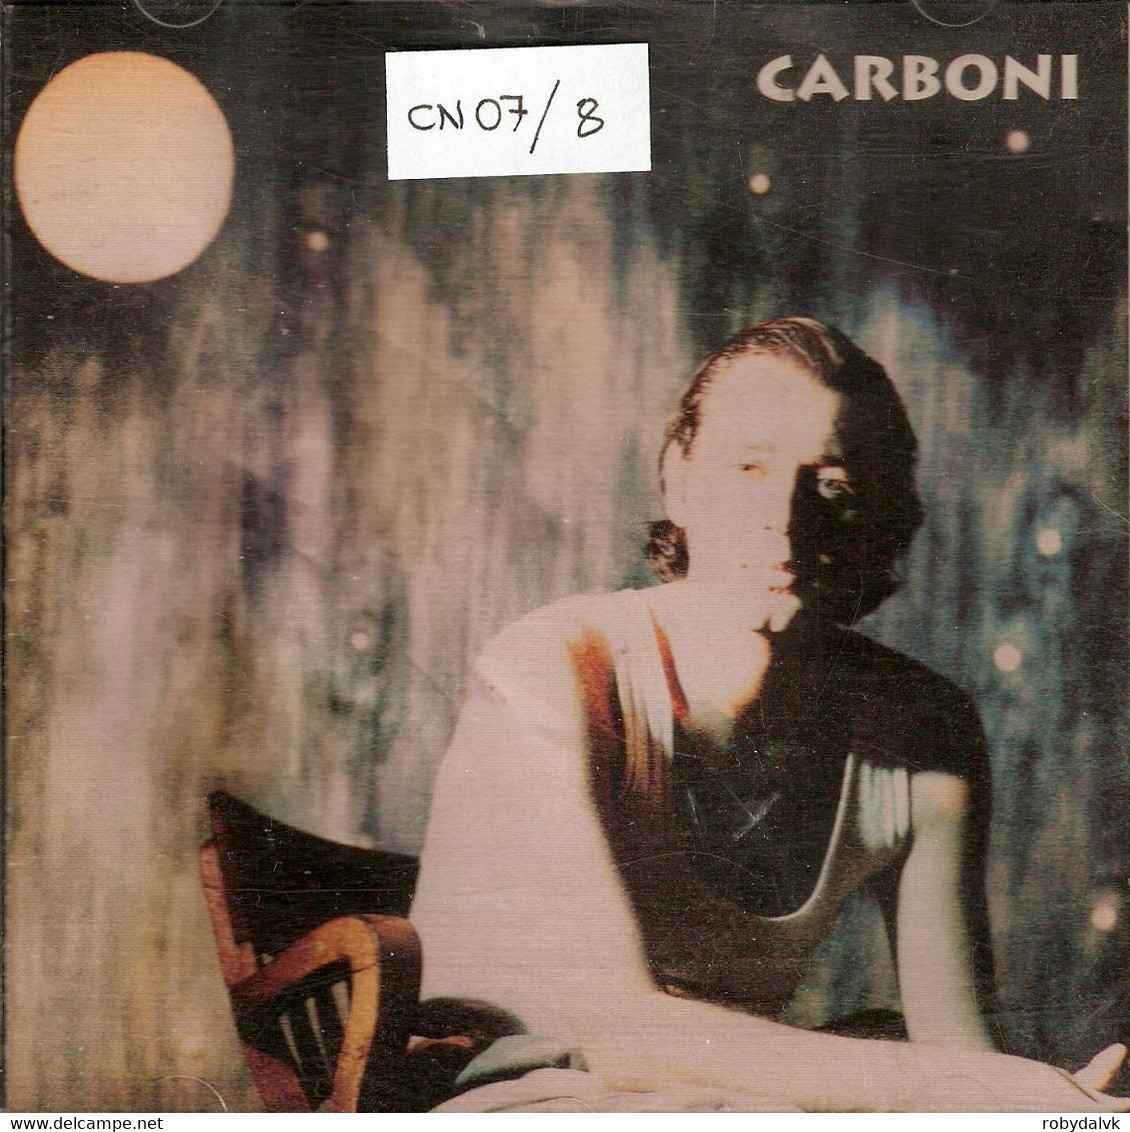 CN07 - LUCA CARBONI : CARBONI - Andere - Italiaans